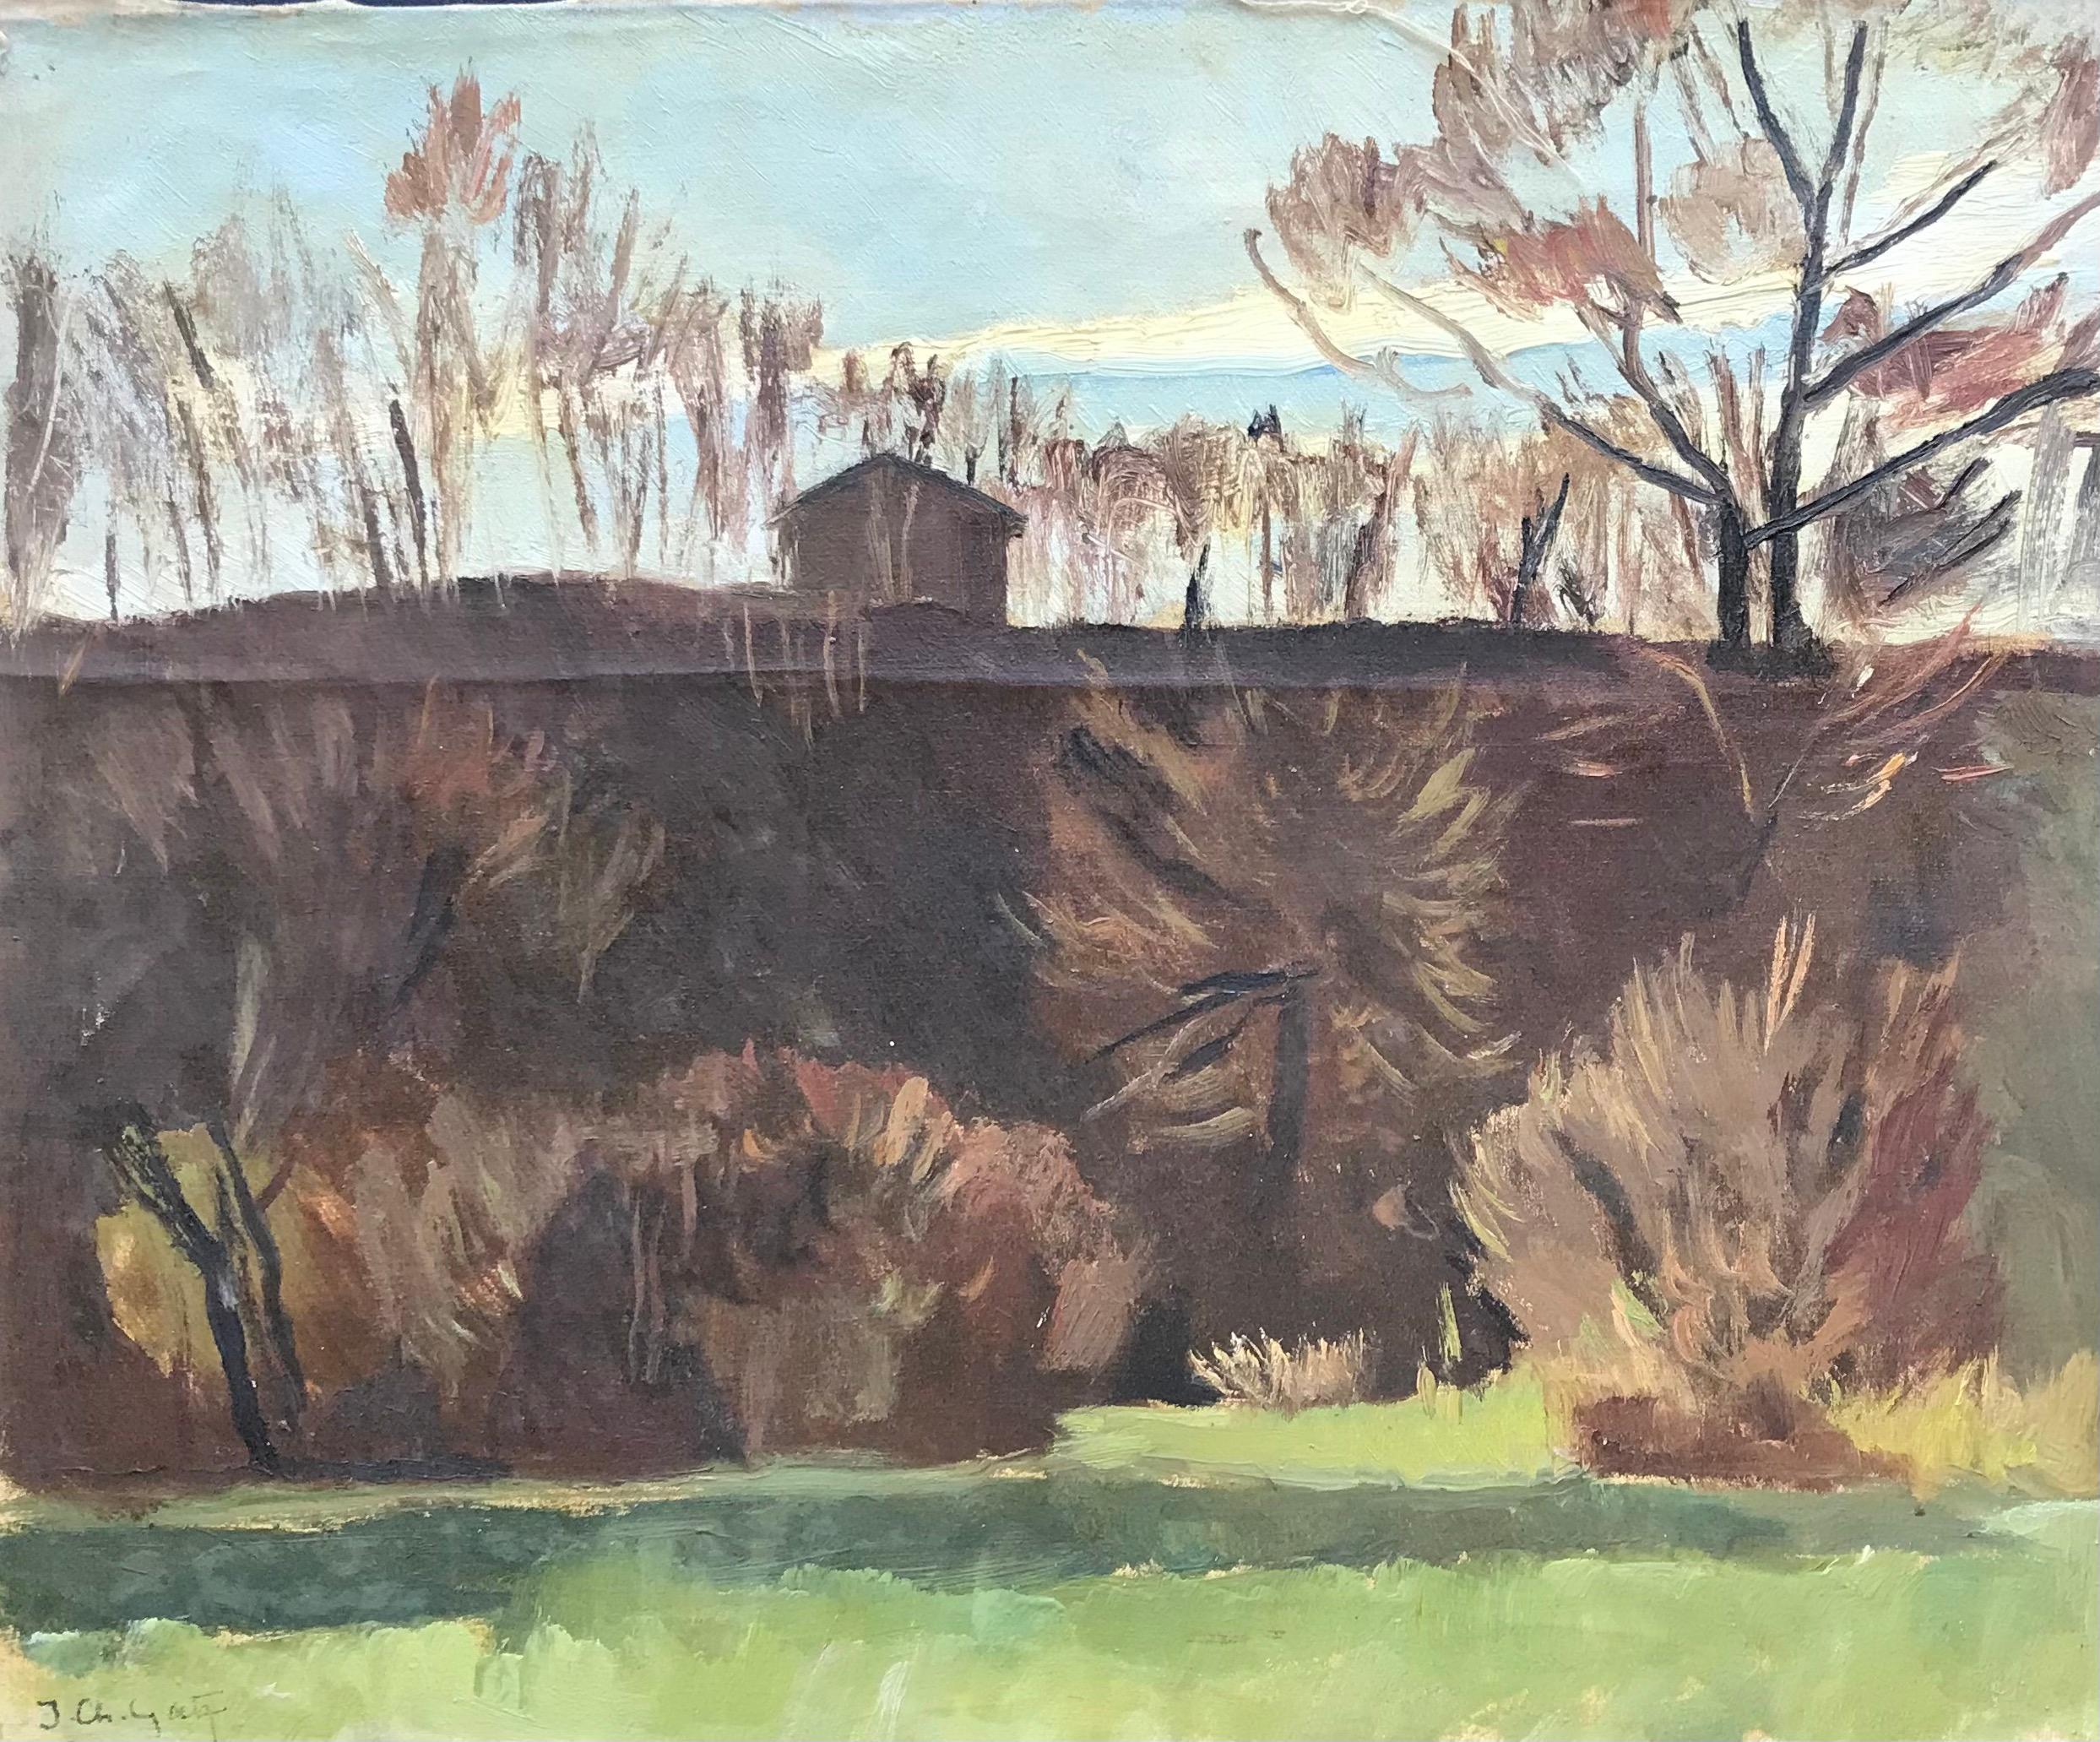 Landscape Painting Isaac Charles Goetz - La petite maison d'I. Ch. Goetz - Huile sur toile 37x45 cm